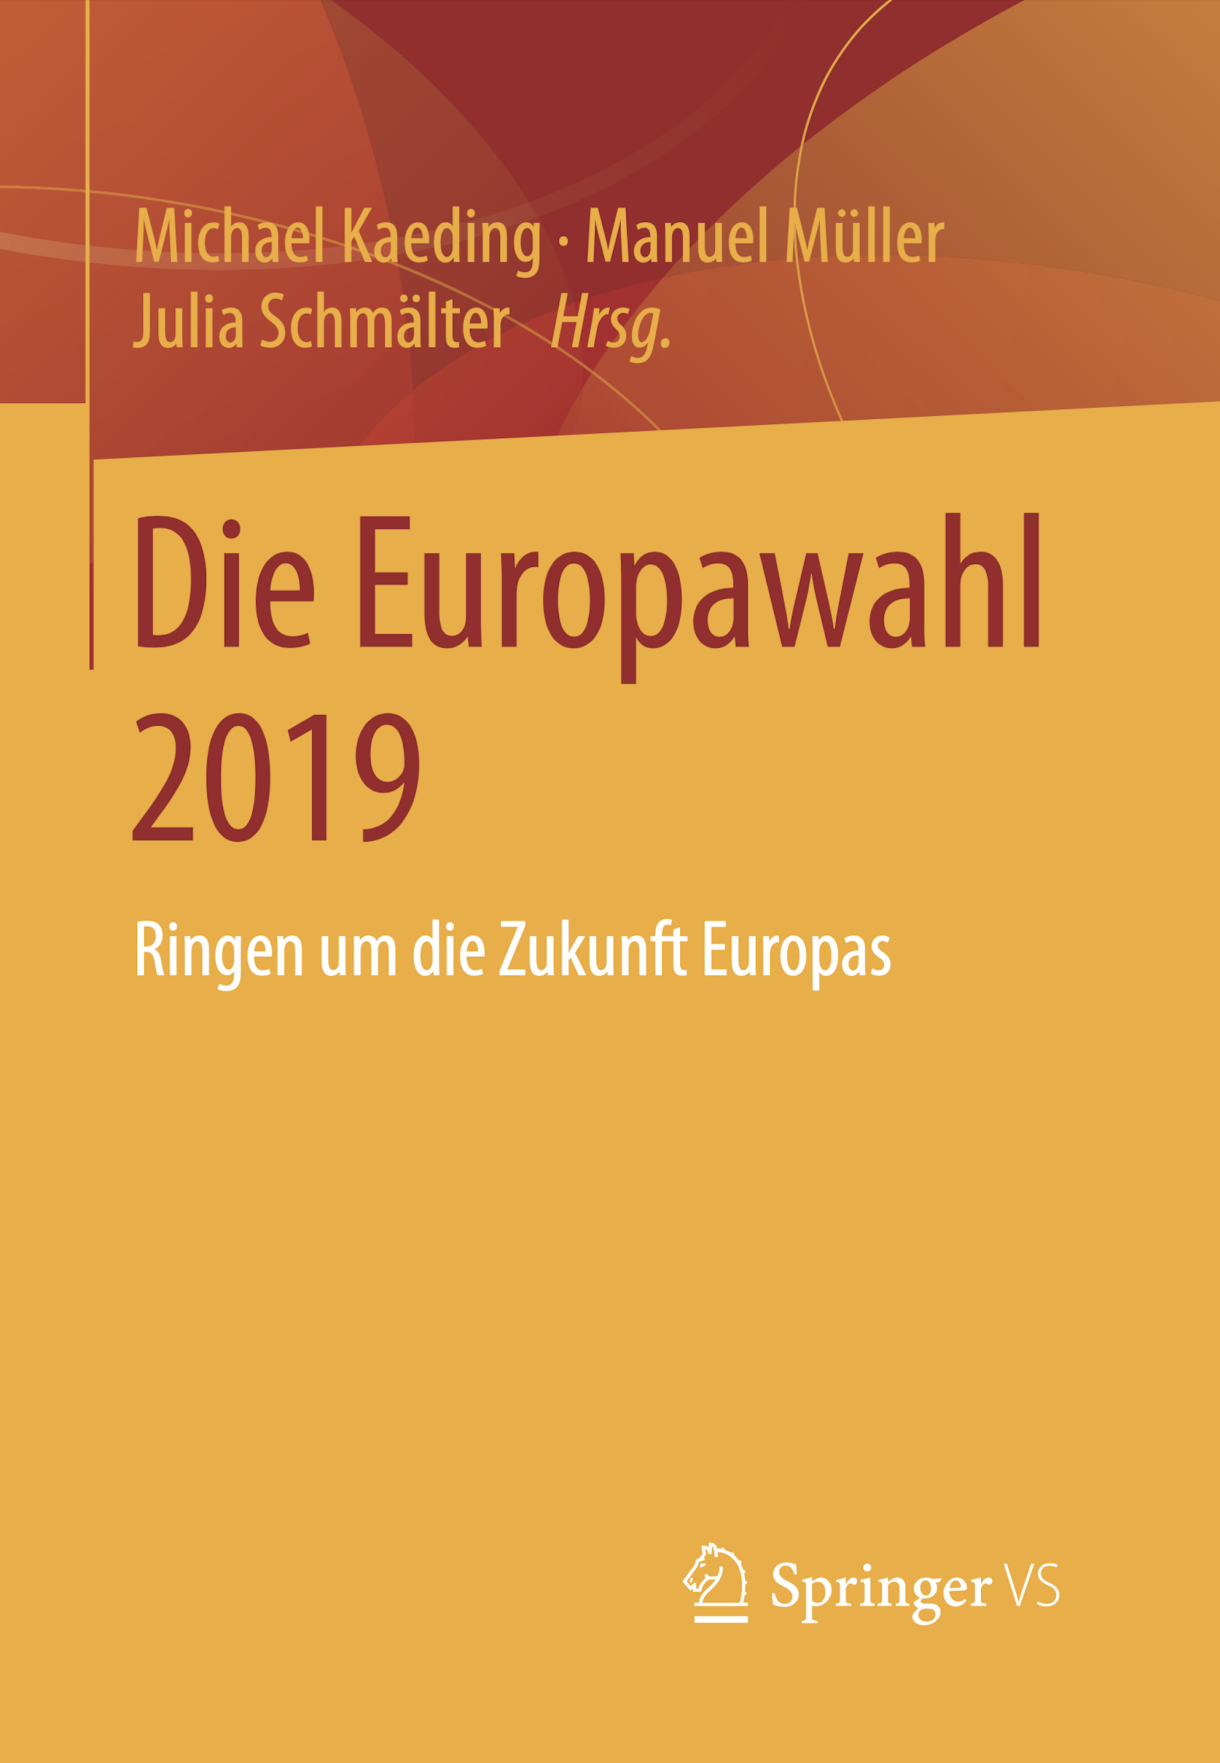 New Publication: Die Europawahl 2019: Ringen um die Zukunft Europas